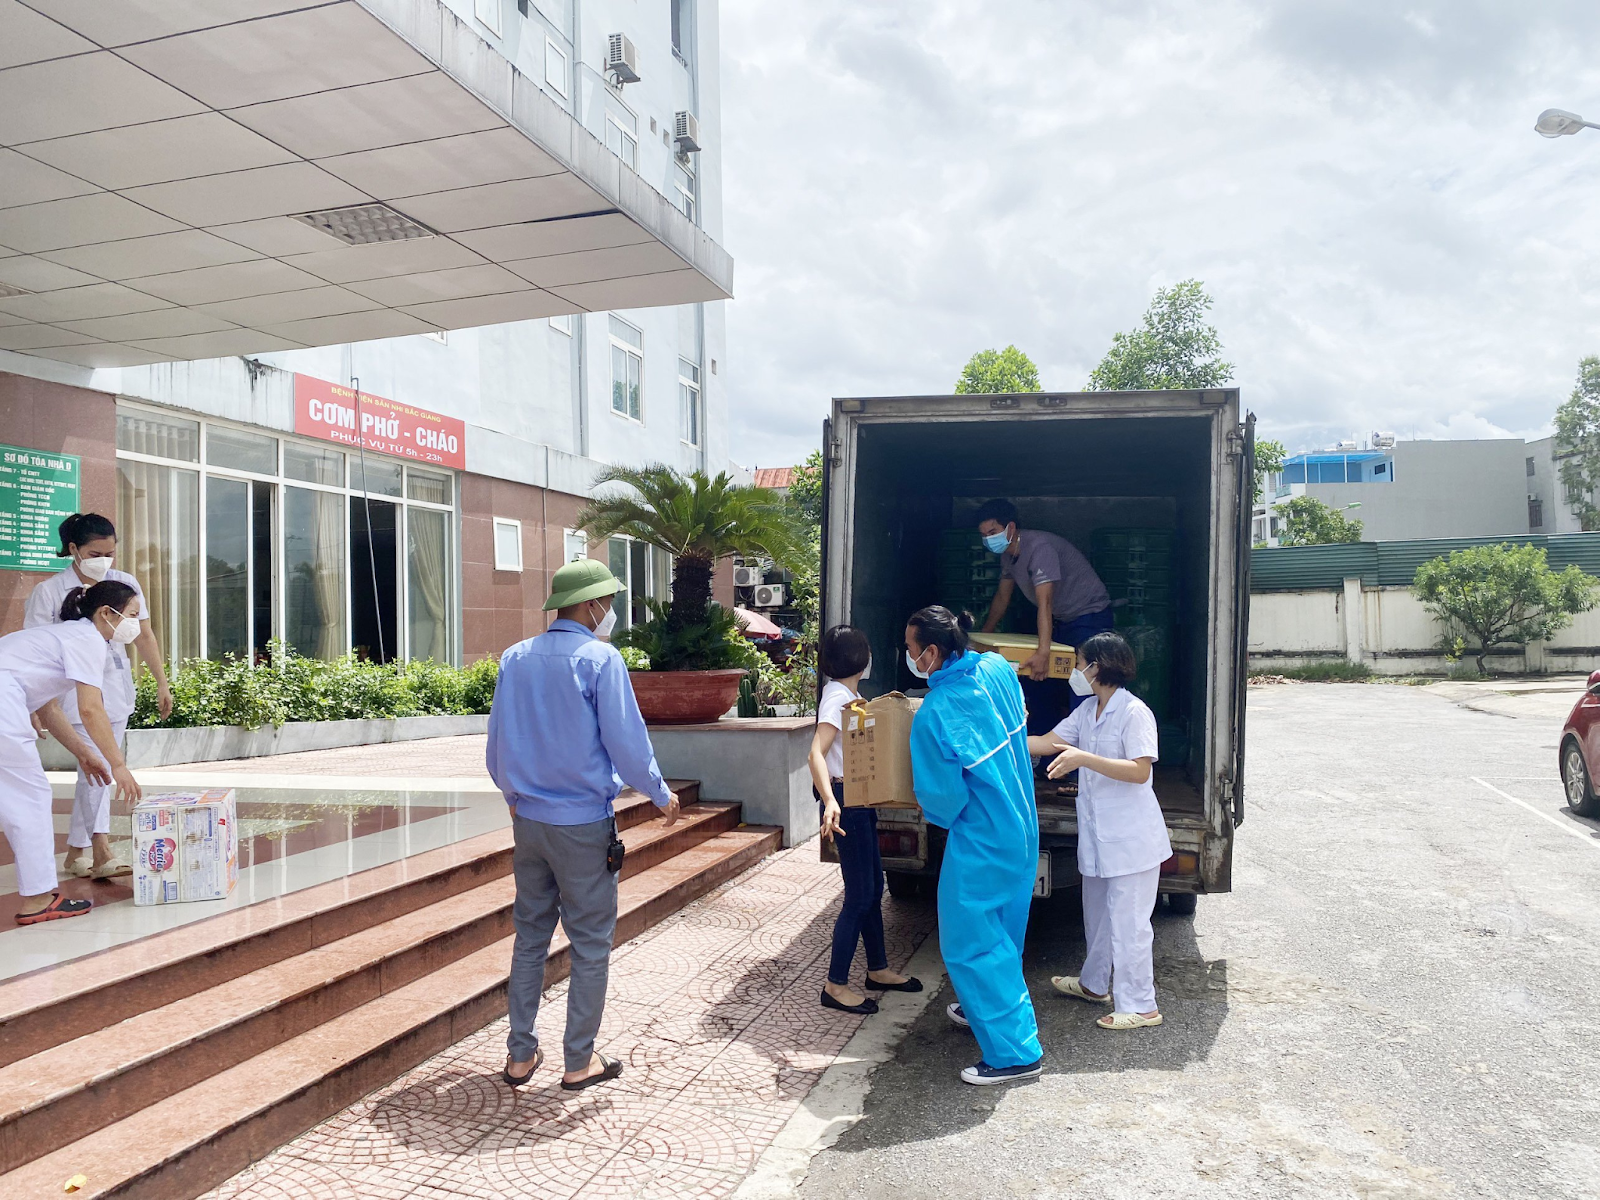 Để đảm bảo các phần quà được gửi đến người đúng lúc, DAMO Group đã tổ chức, phối hợp chặt chẽ với các địa phương trong điều kiện tuân thủ tuyệt đối các quy định phòng dịch nghiêm ngặt. Các chuyến xe quà tặng của DAMO Group đã được trao tặng đầy đủ và kịp thời để phục vụ cán bộ y tế, bà con tại Bắc Giang vào ngày 13/06/2021 vừa qua.